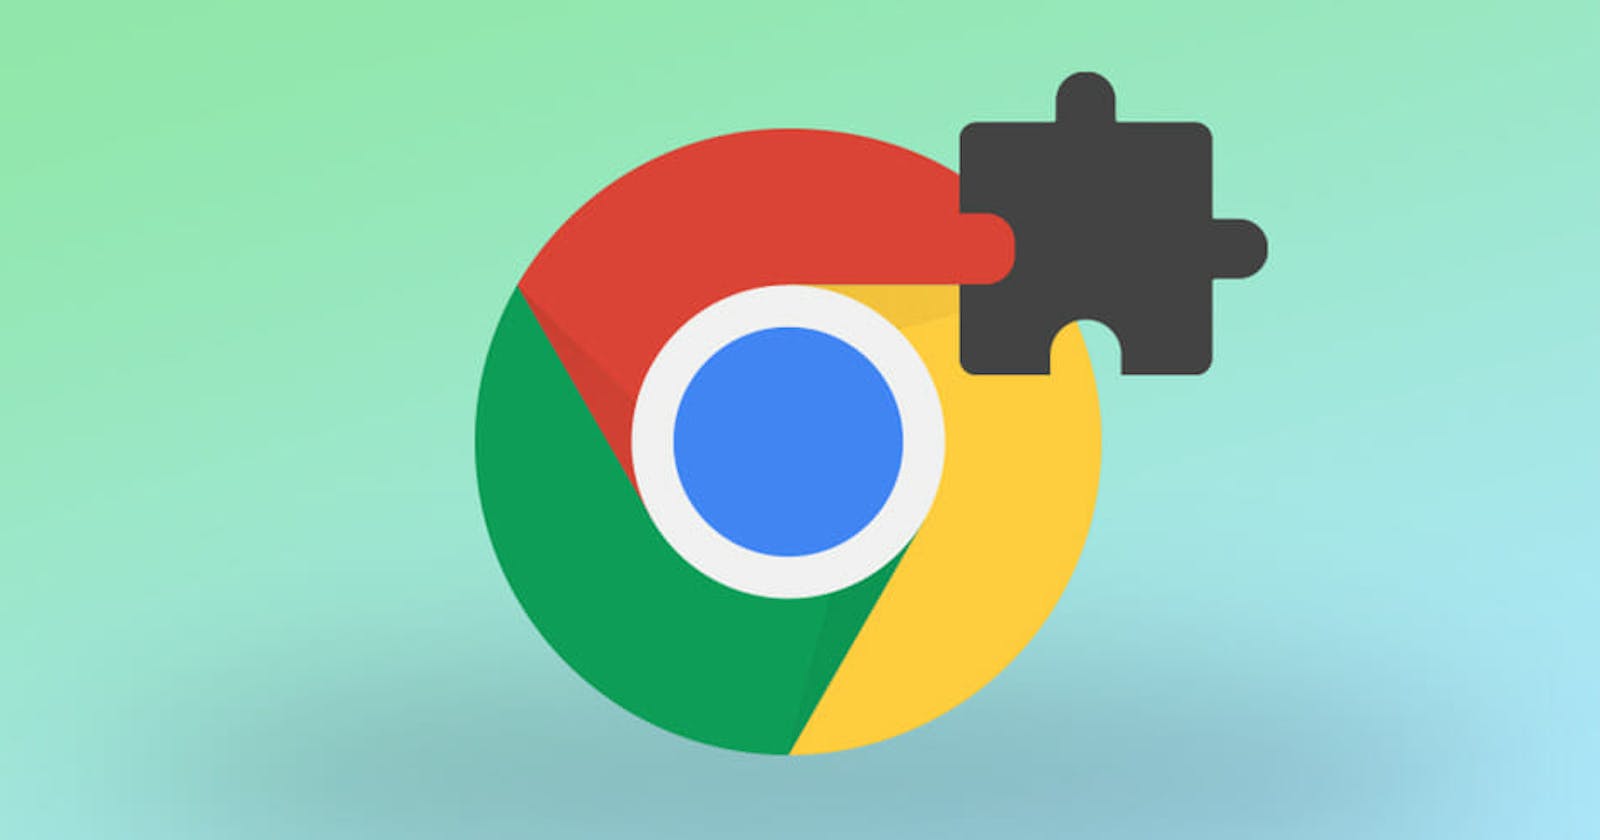 Building a Chrome Extension